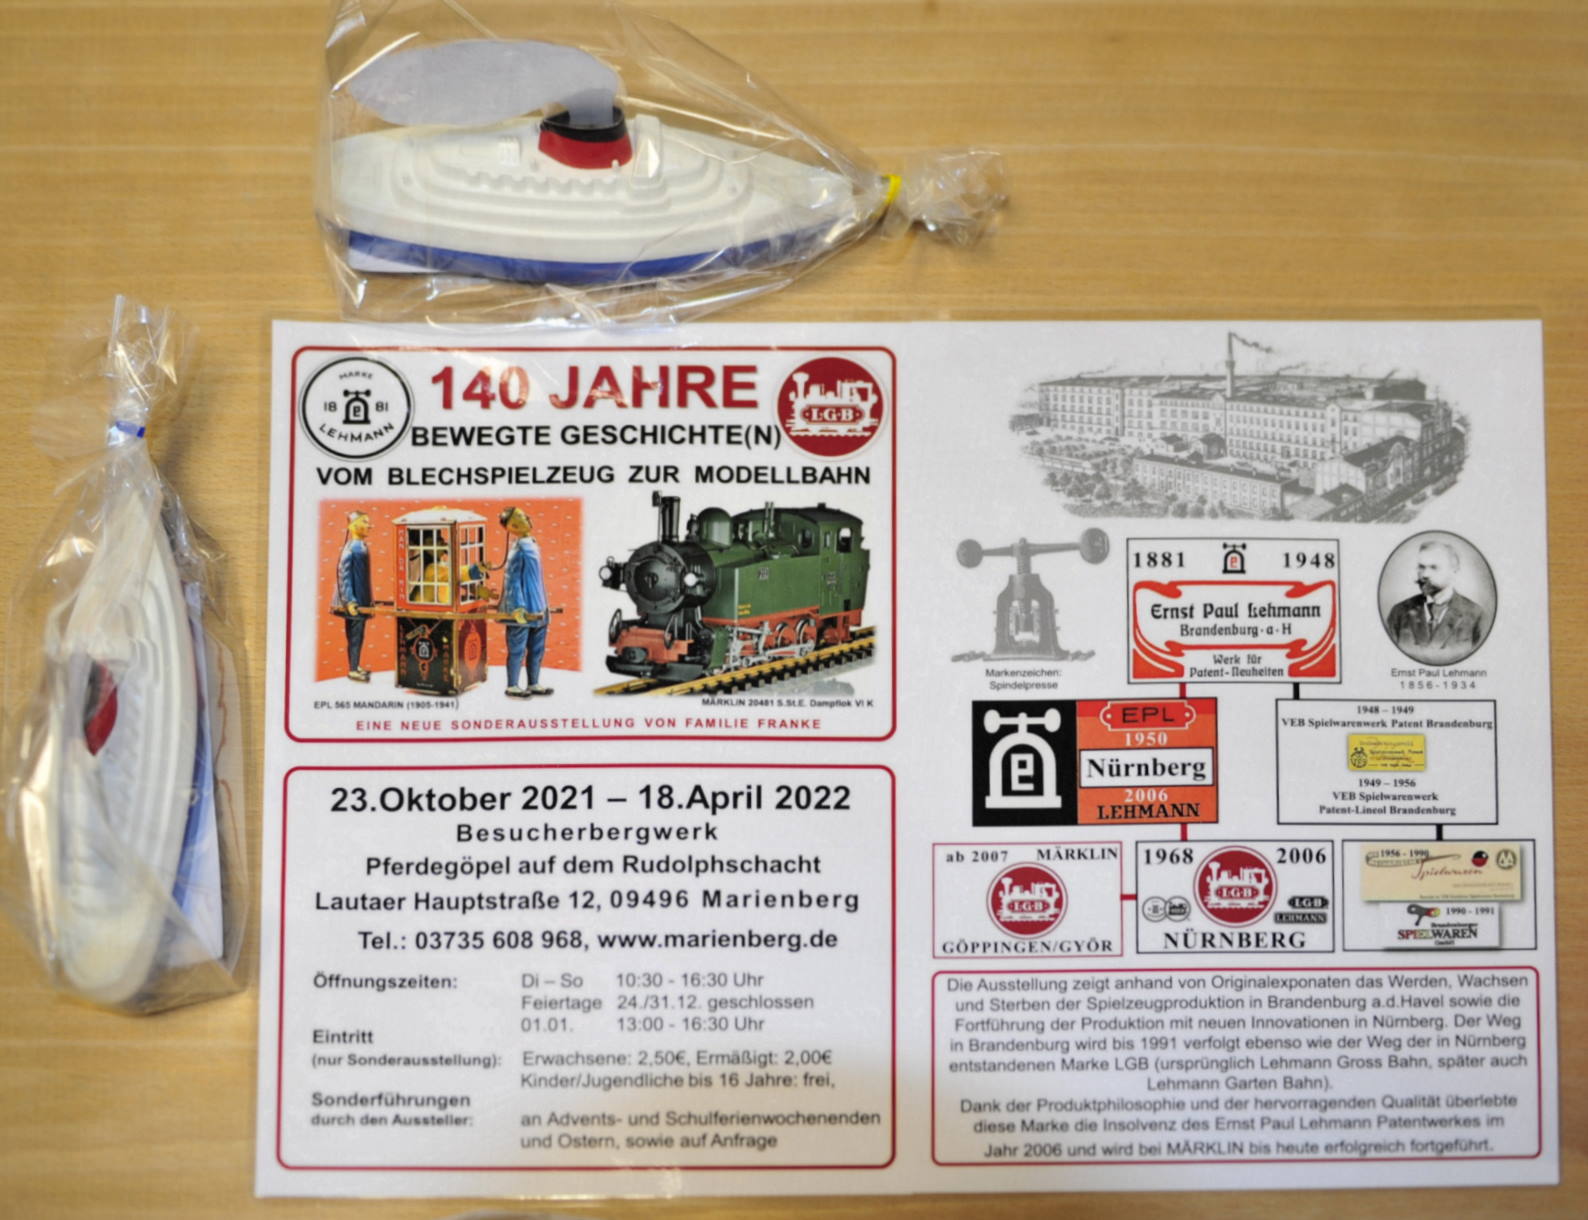 Das Bild zeigt das Motto der Ausstellung, die ffnungszeiten mit Adresse und auf der rechten Seite die stark vereinfachte Darstellung ber WERDEN, WACHSEN und STERBEN der Blechspielzeugproduktion in Brandenburg.